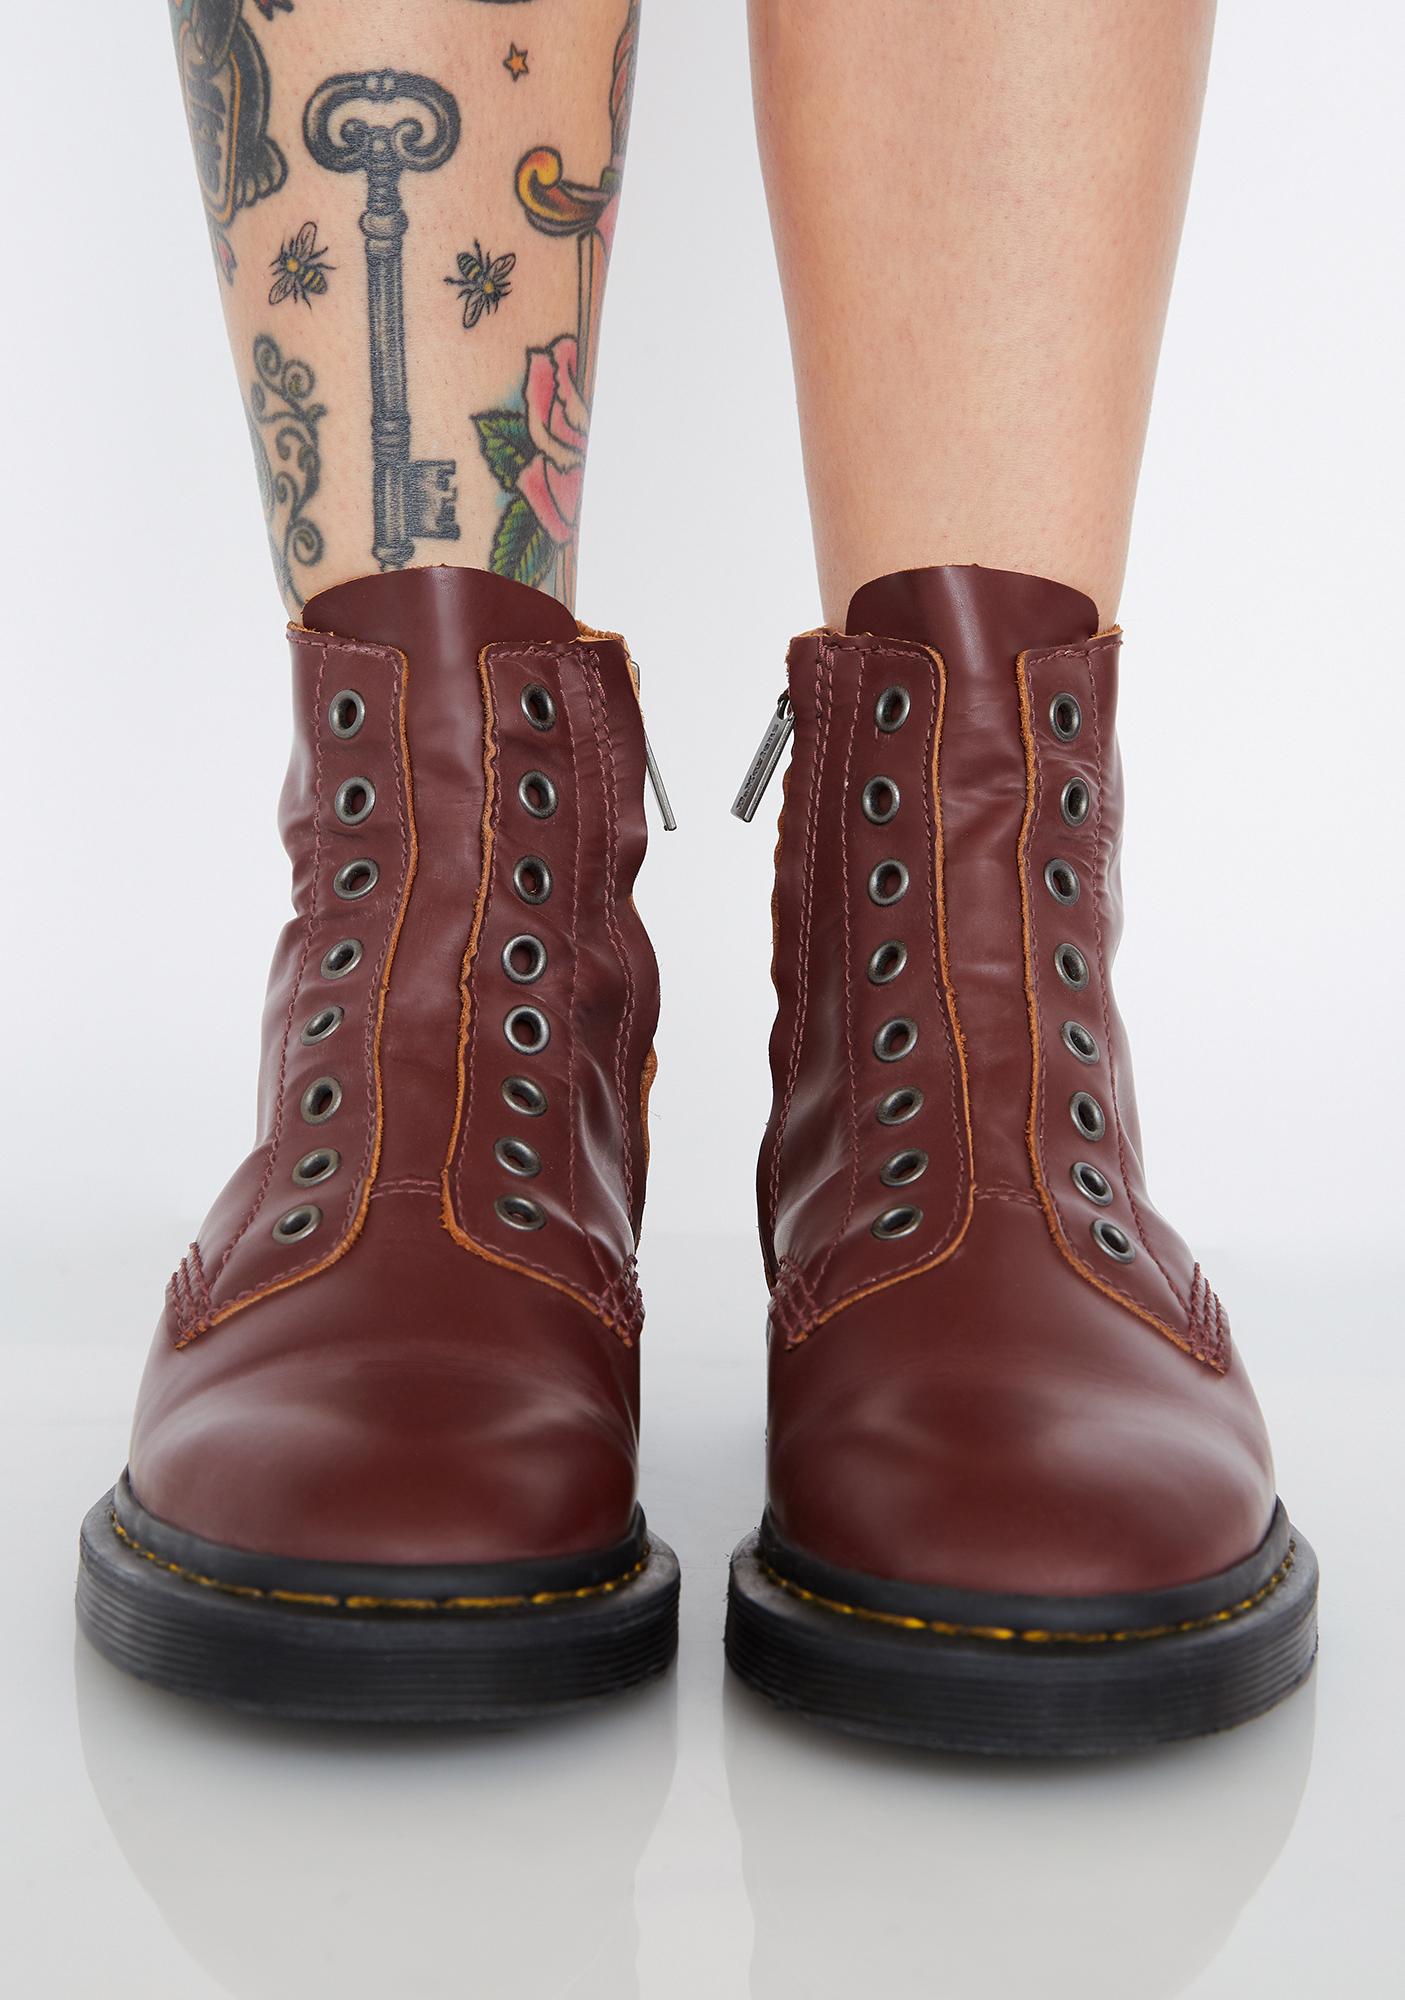 dm boots sale